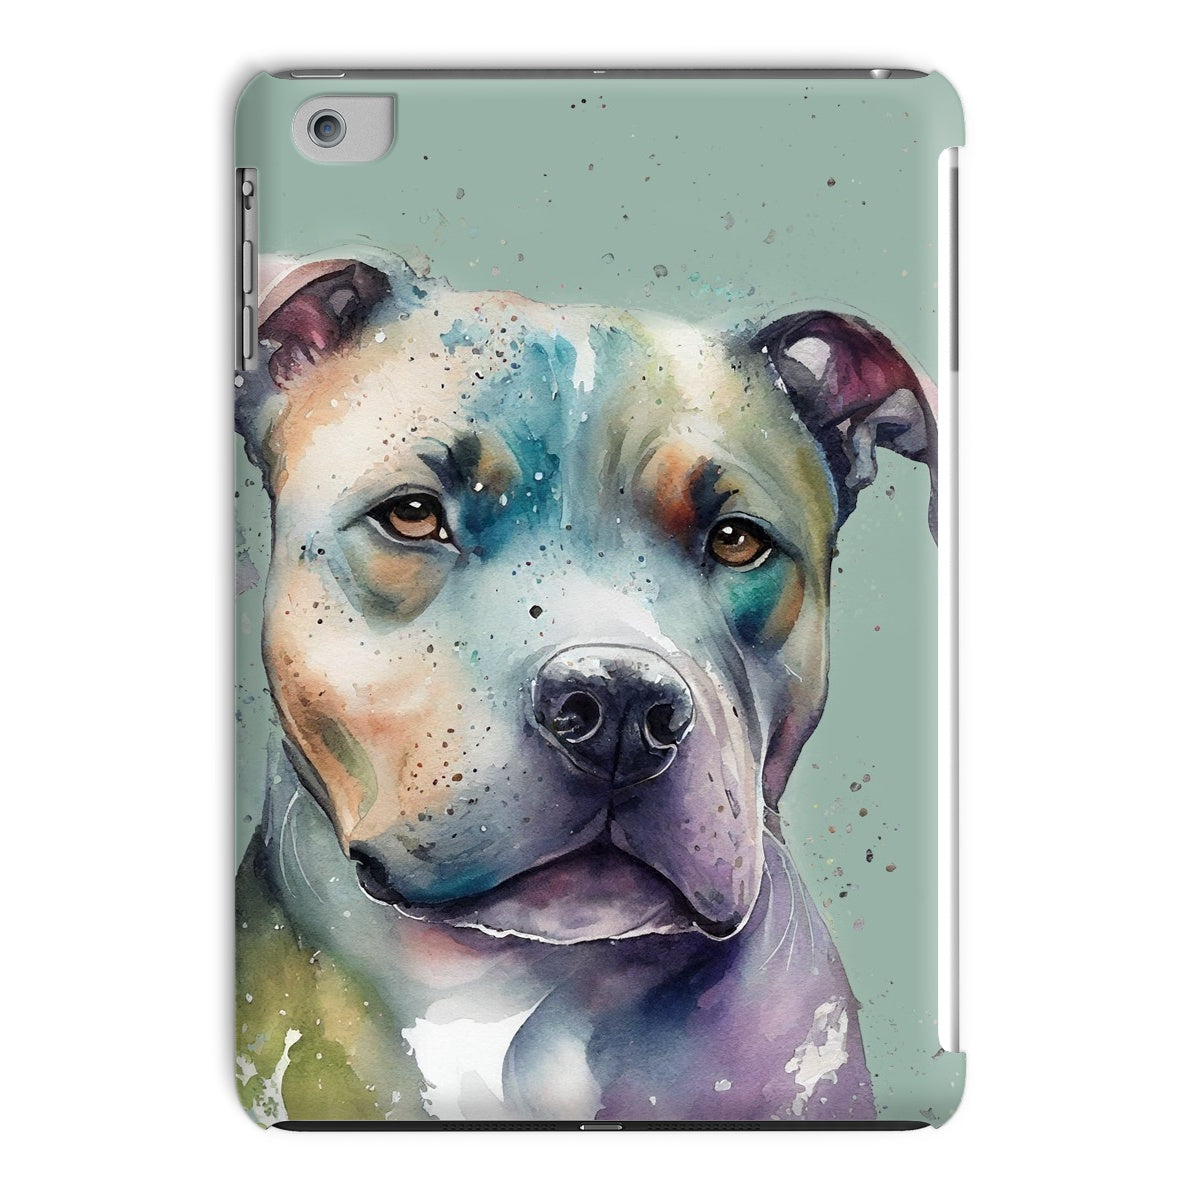 Staffordshire Bull Terrier Tablet Cases